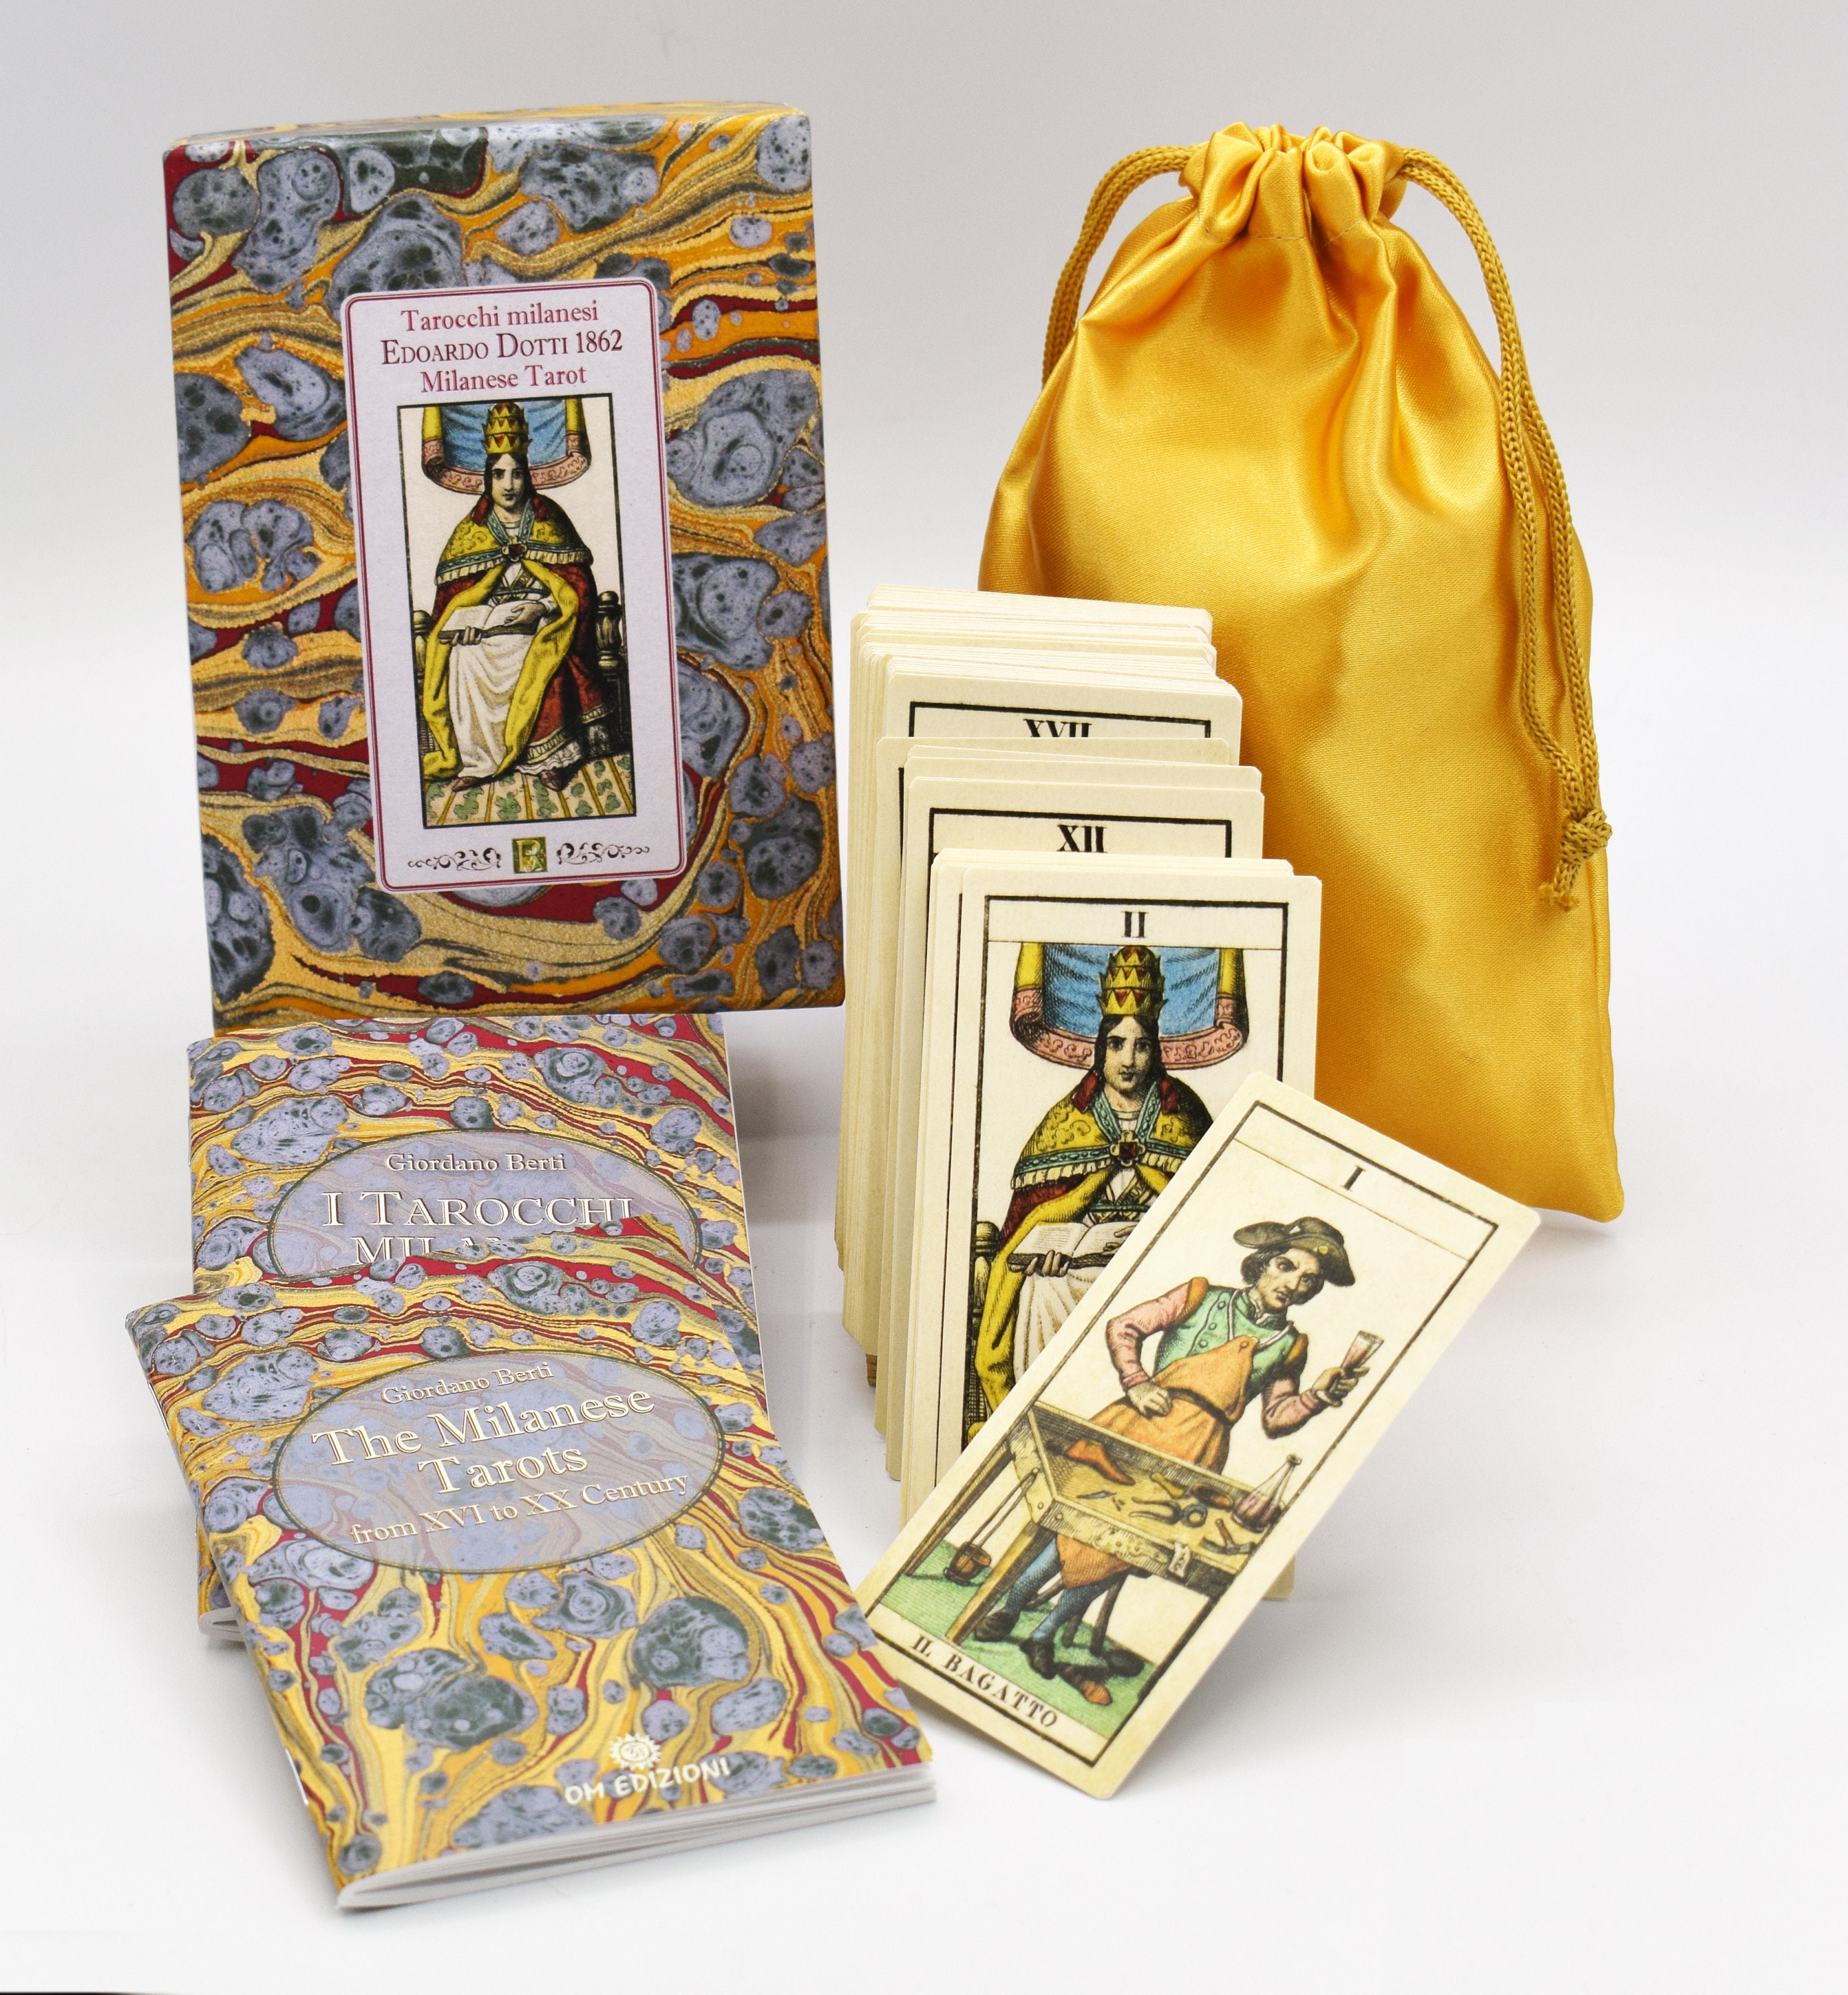 SPLENDID Milanese Tarot, Dotti 1862, in Art Box Ltd.ed. 900 Copies